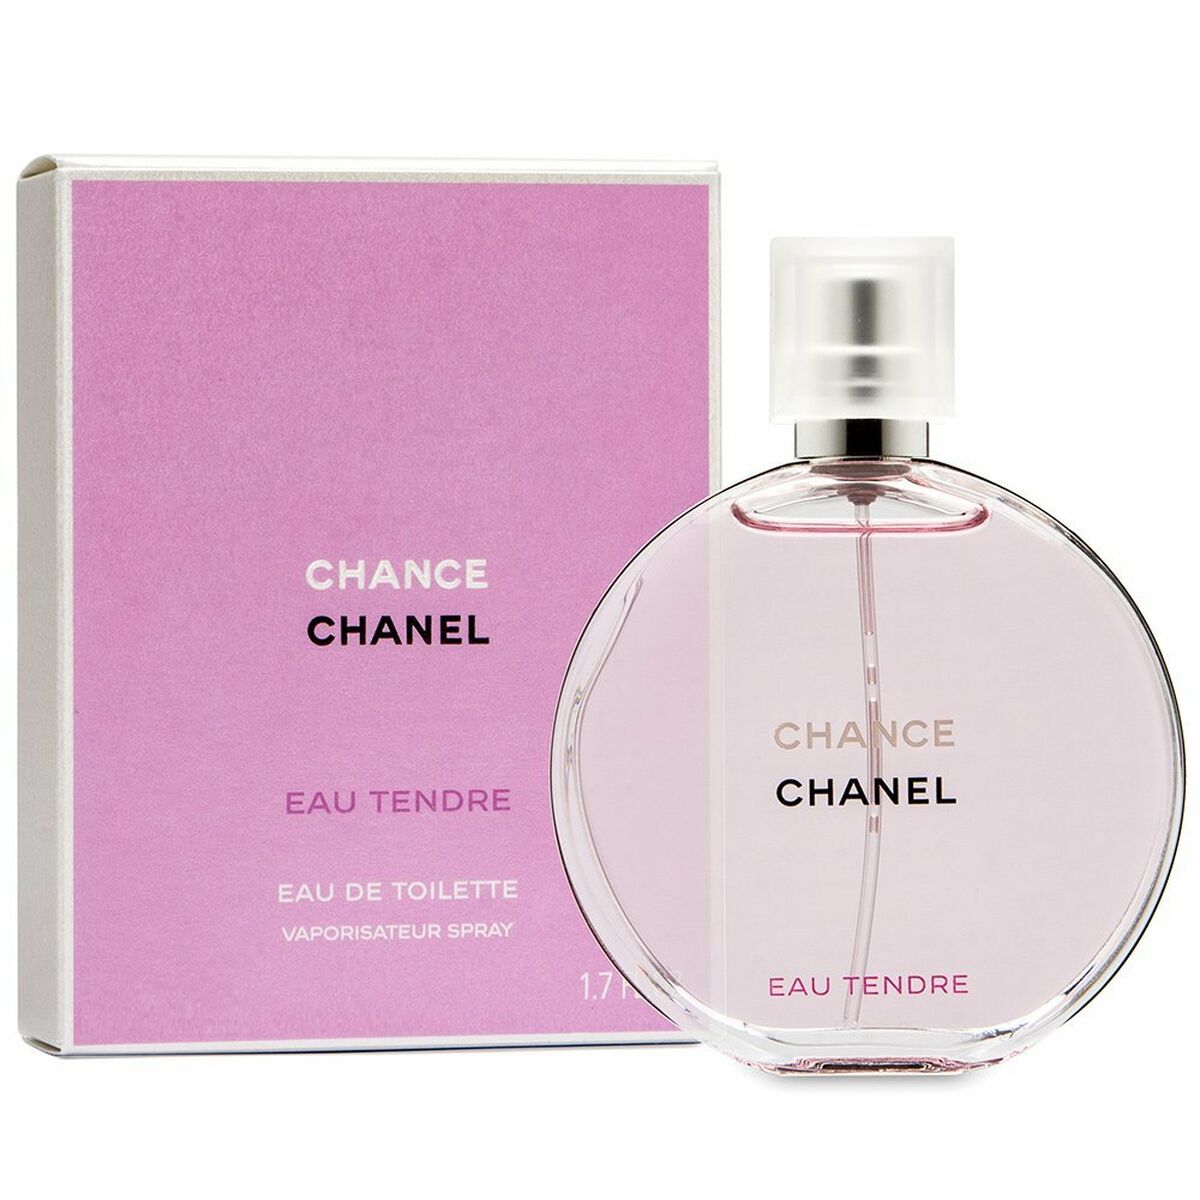 CHANEL CHANCE Eau Tendre Perfume